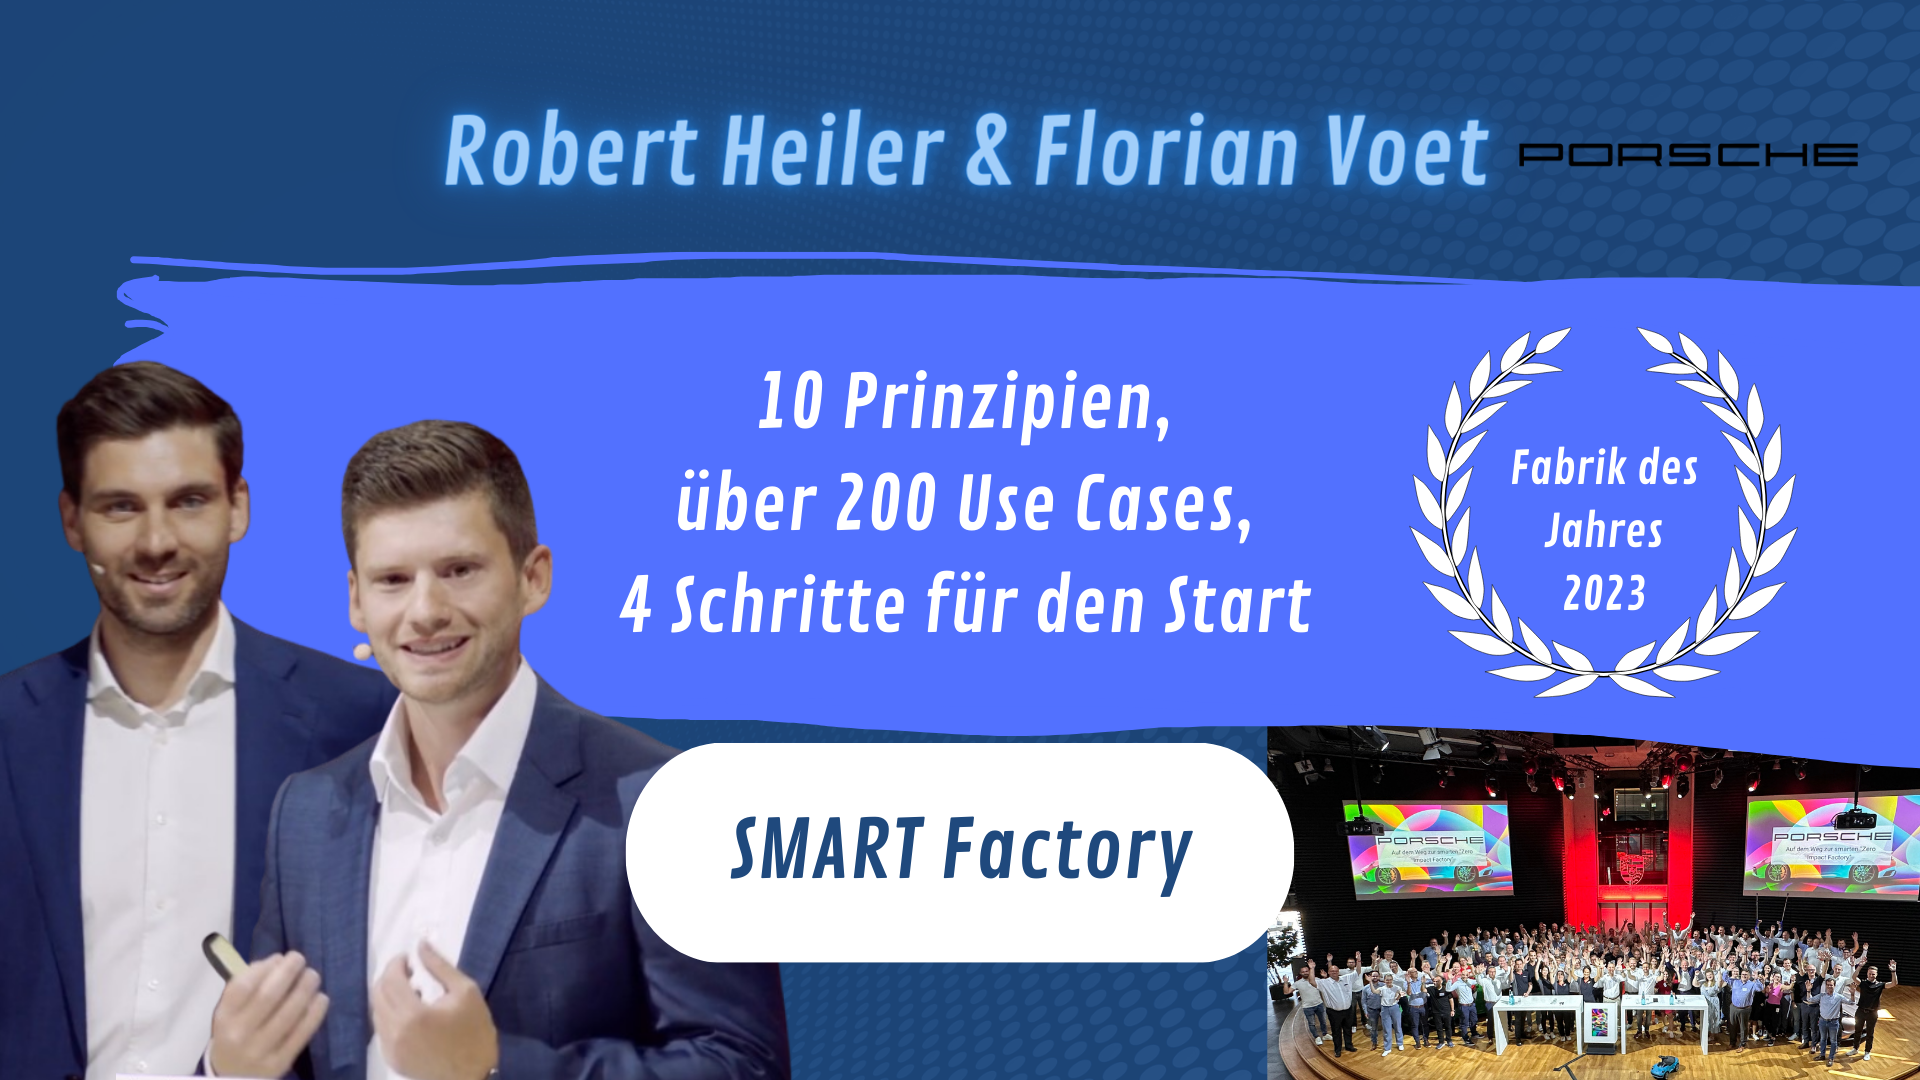 DIGITAL - SMART Factory mit Robert Heiler & Florian Voet